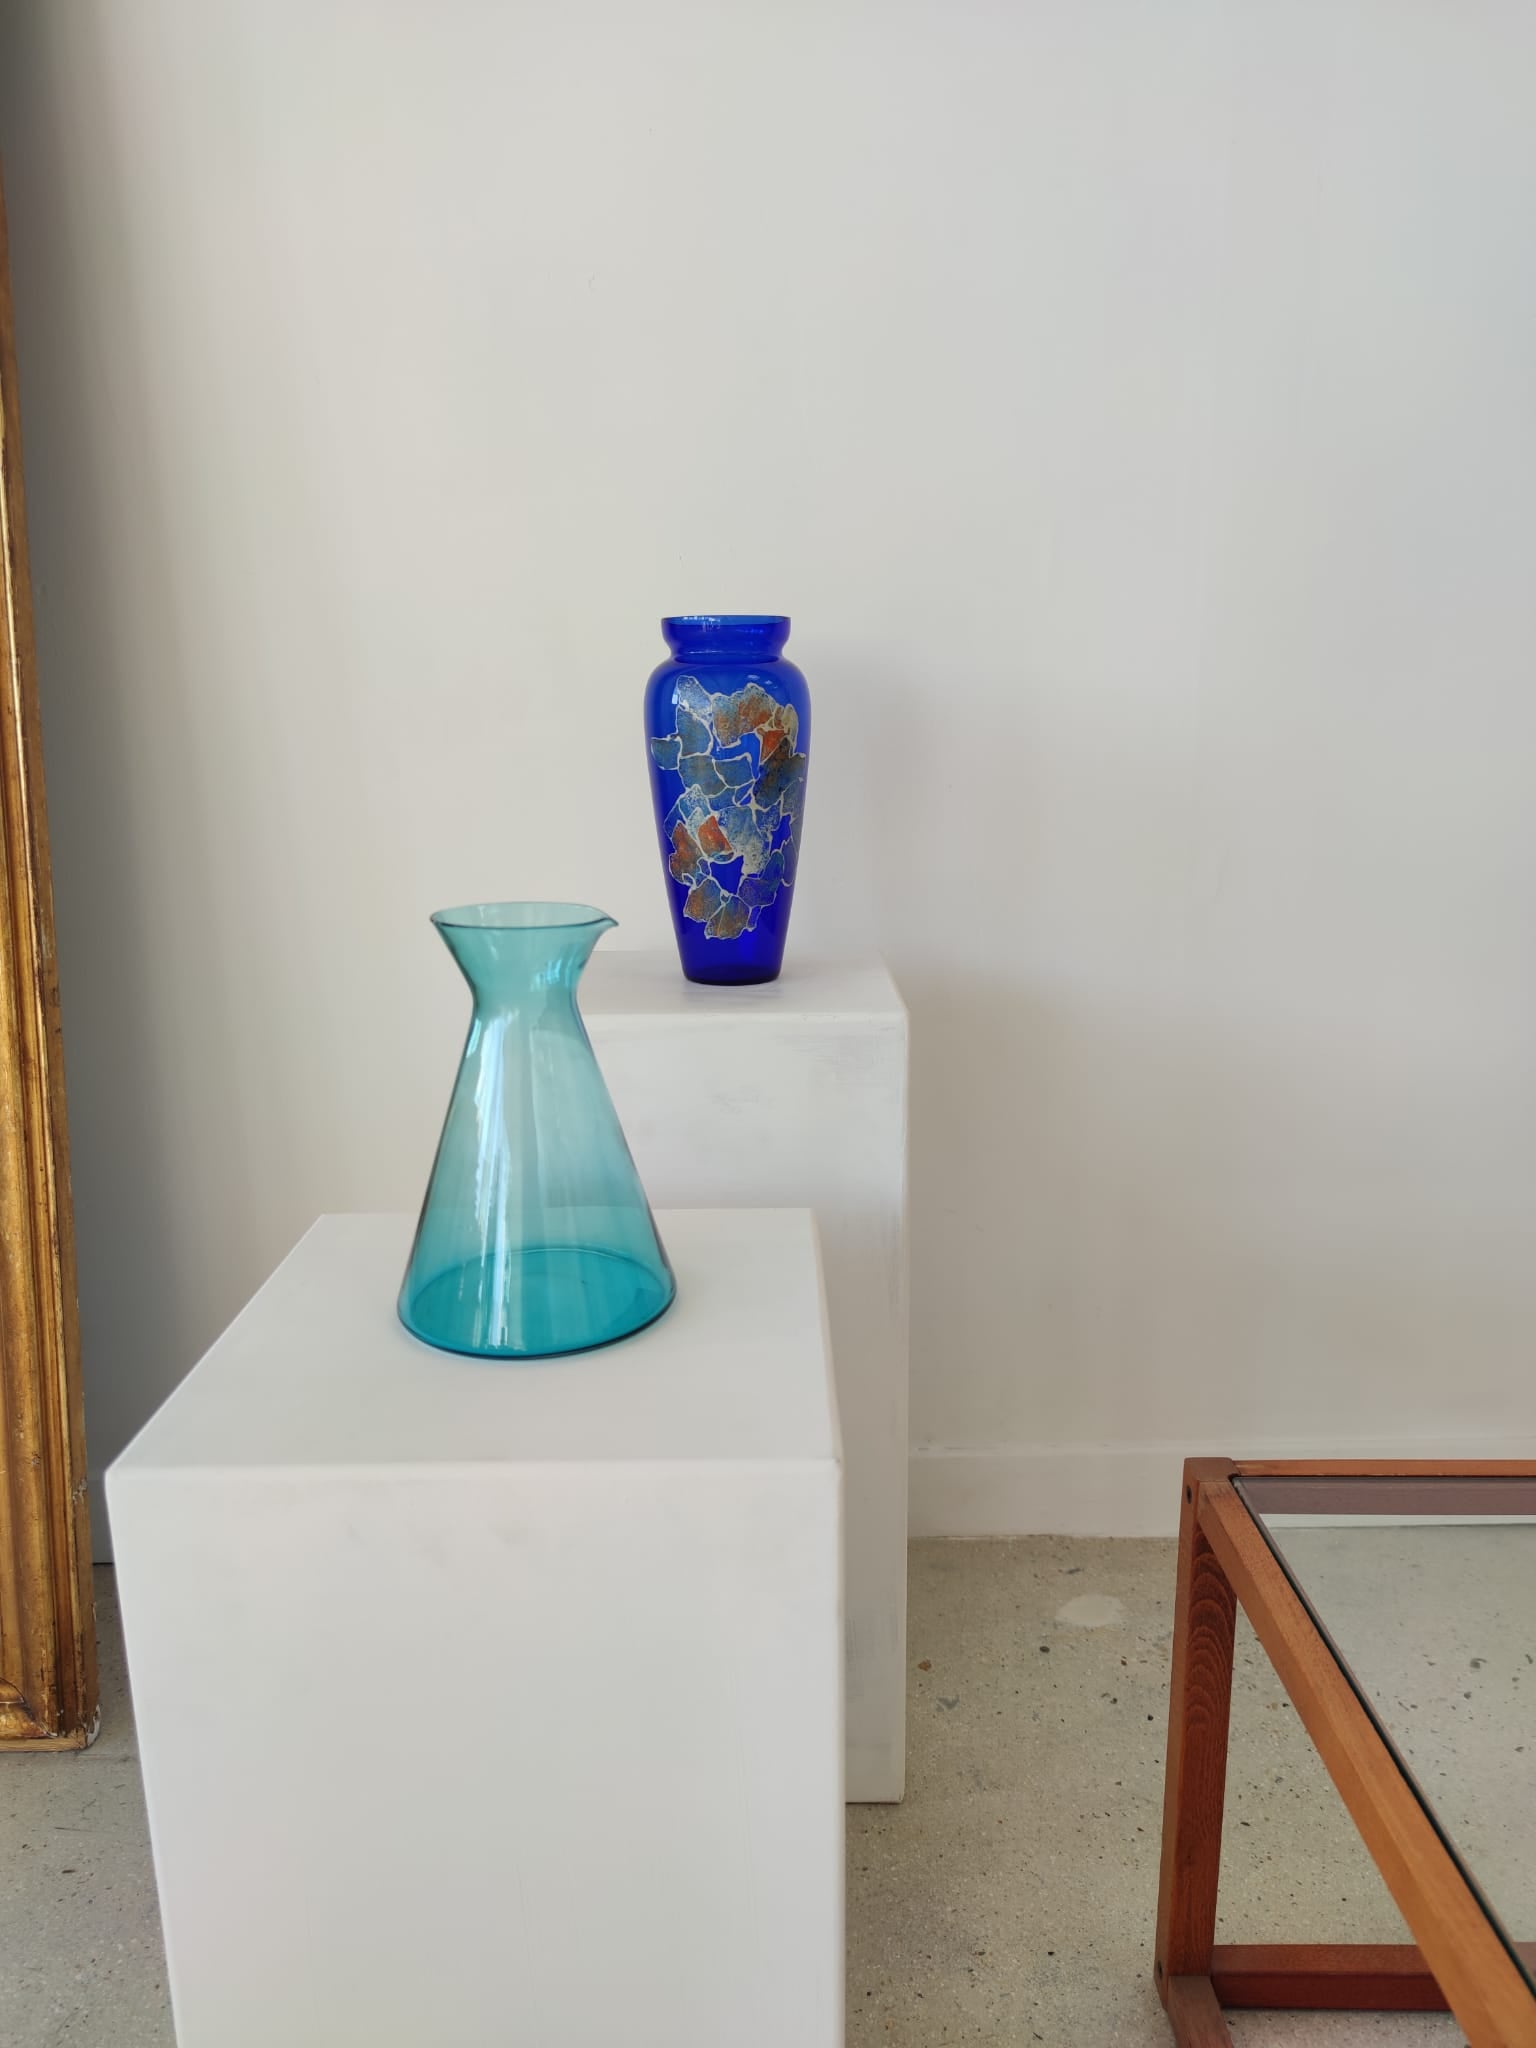 Carafe géométrique évasée conique en verre teinté turquoise